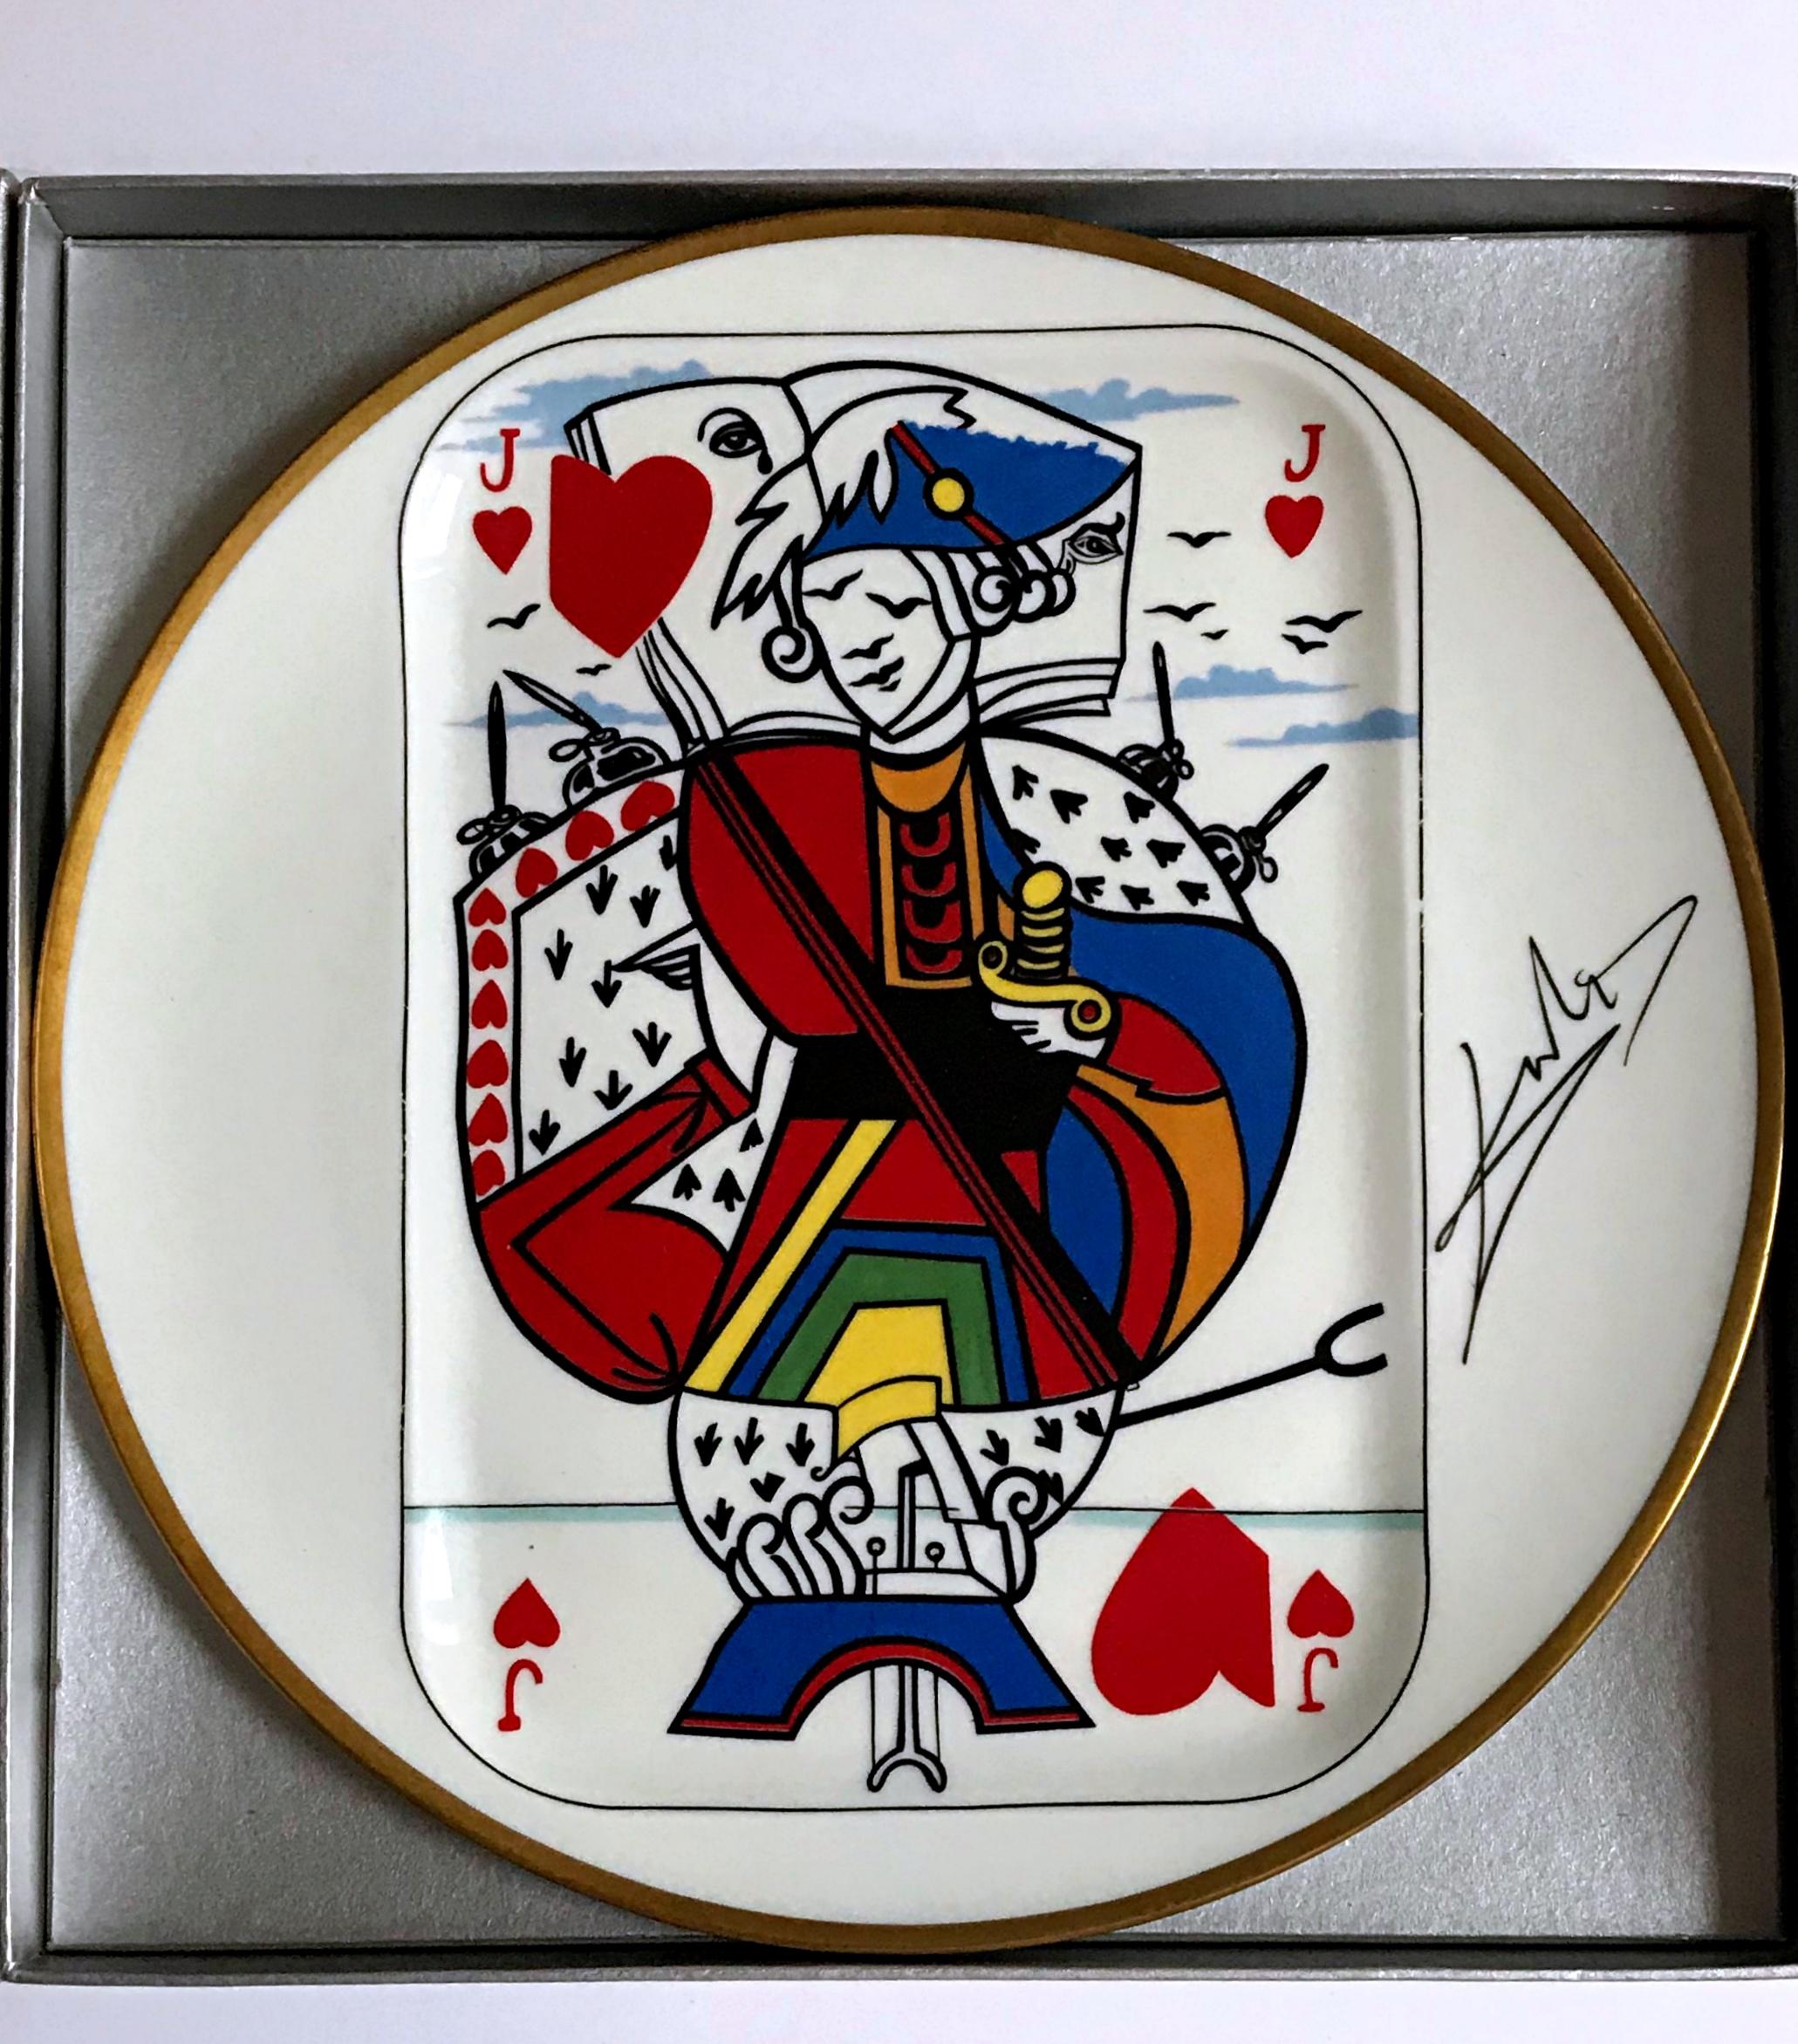 Jack of Hearts - assiette en porcelaine en édition limitée fabriquée en France  - Surréalisme Mixed Media Art par Salvador Dalí